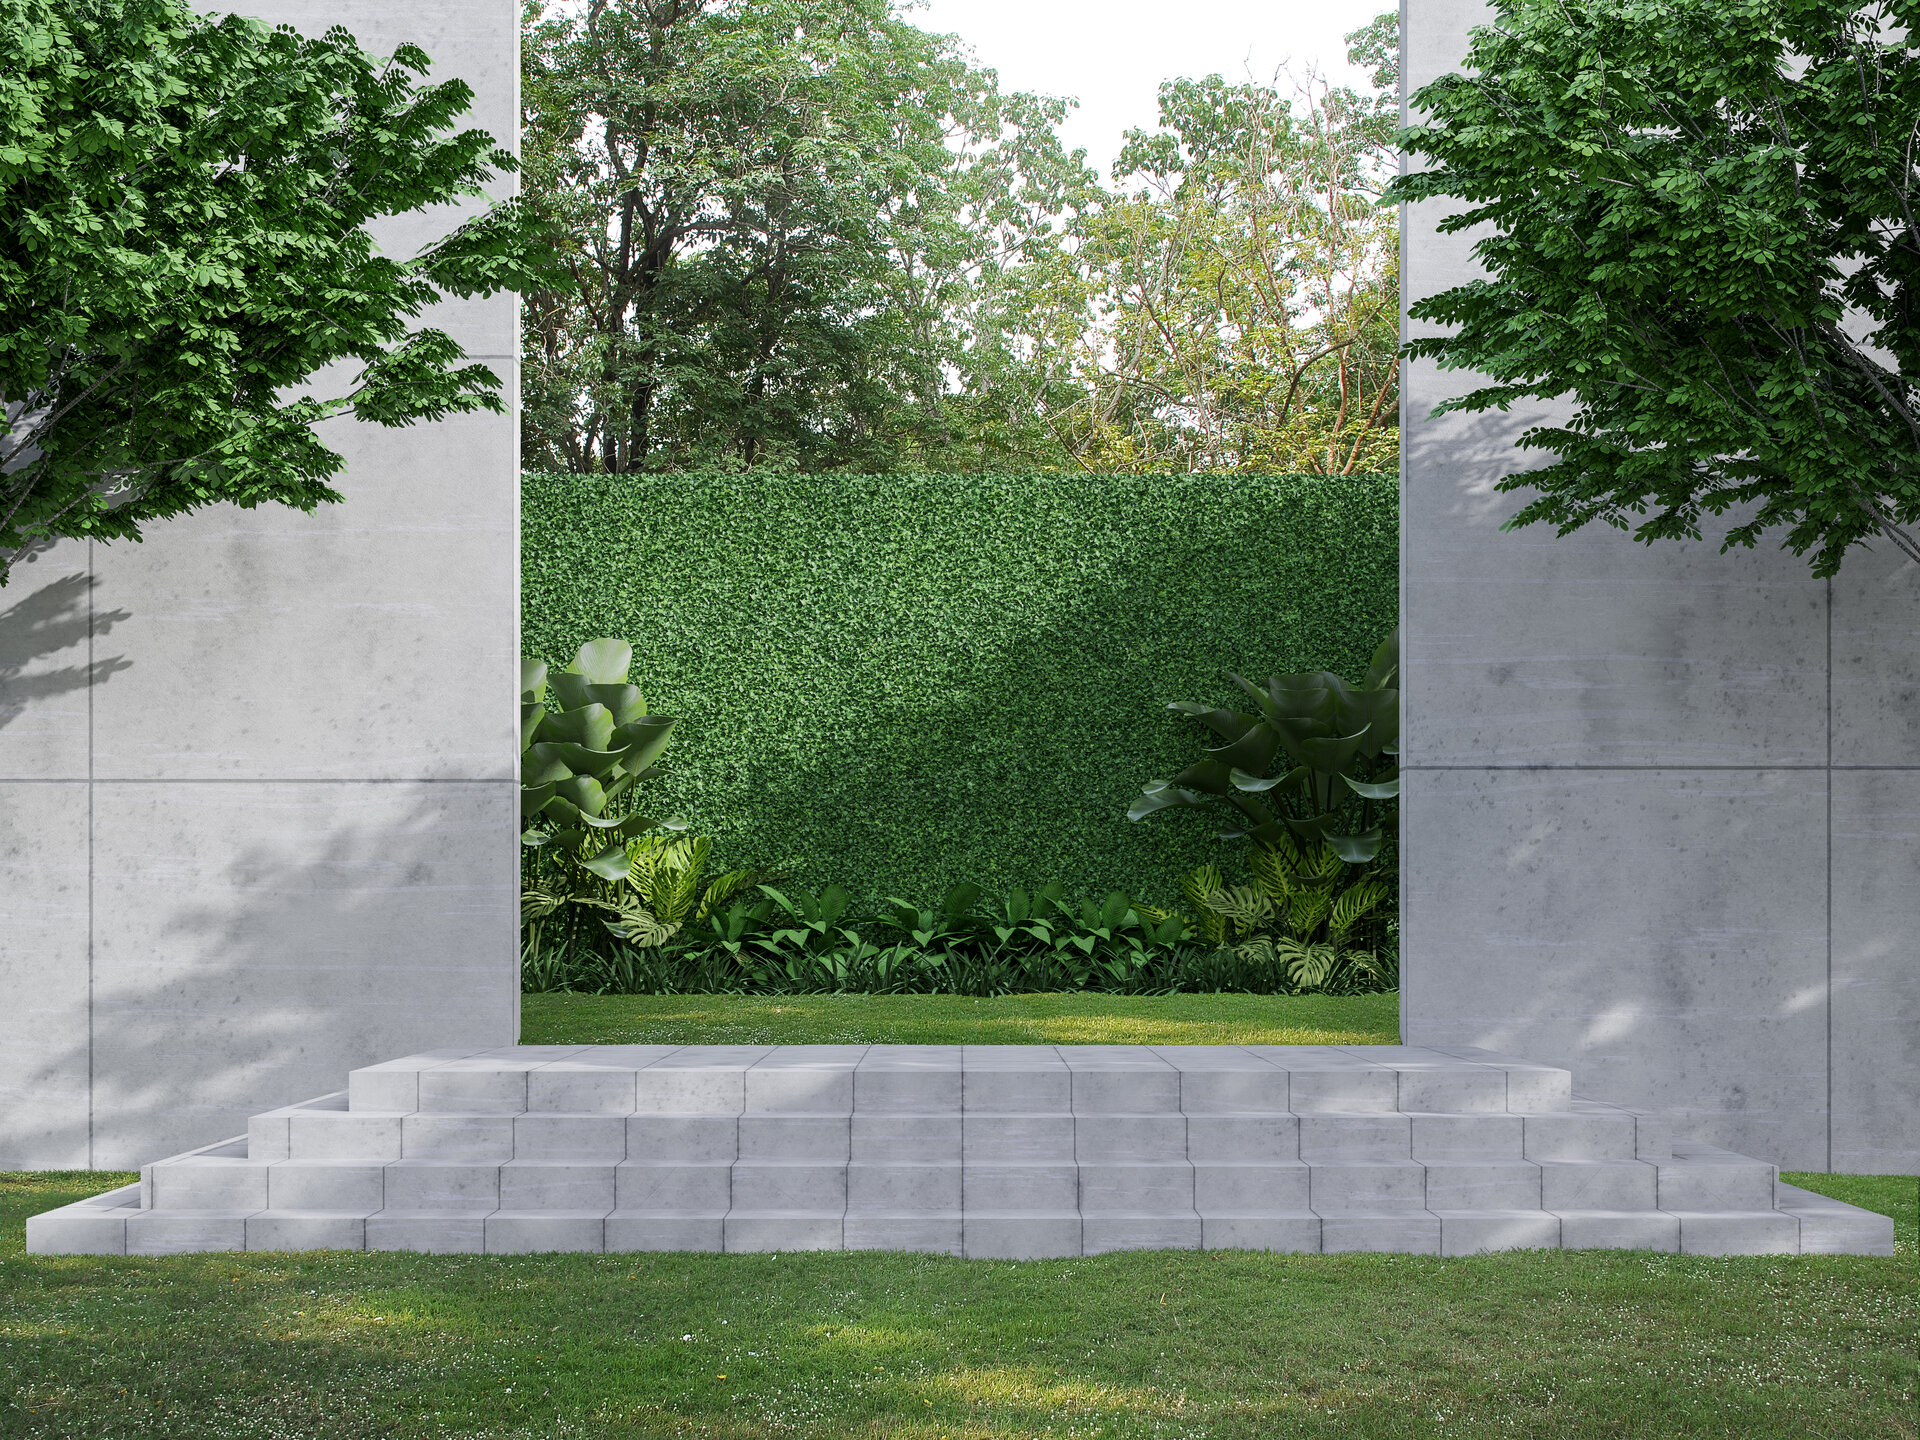 Betonmauer im Garten, grüne Pflanzenzäune, umgeben von Natur